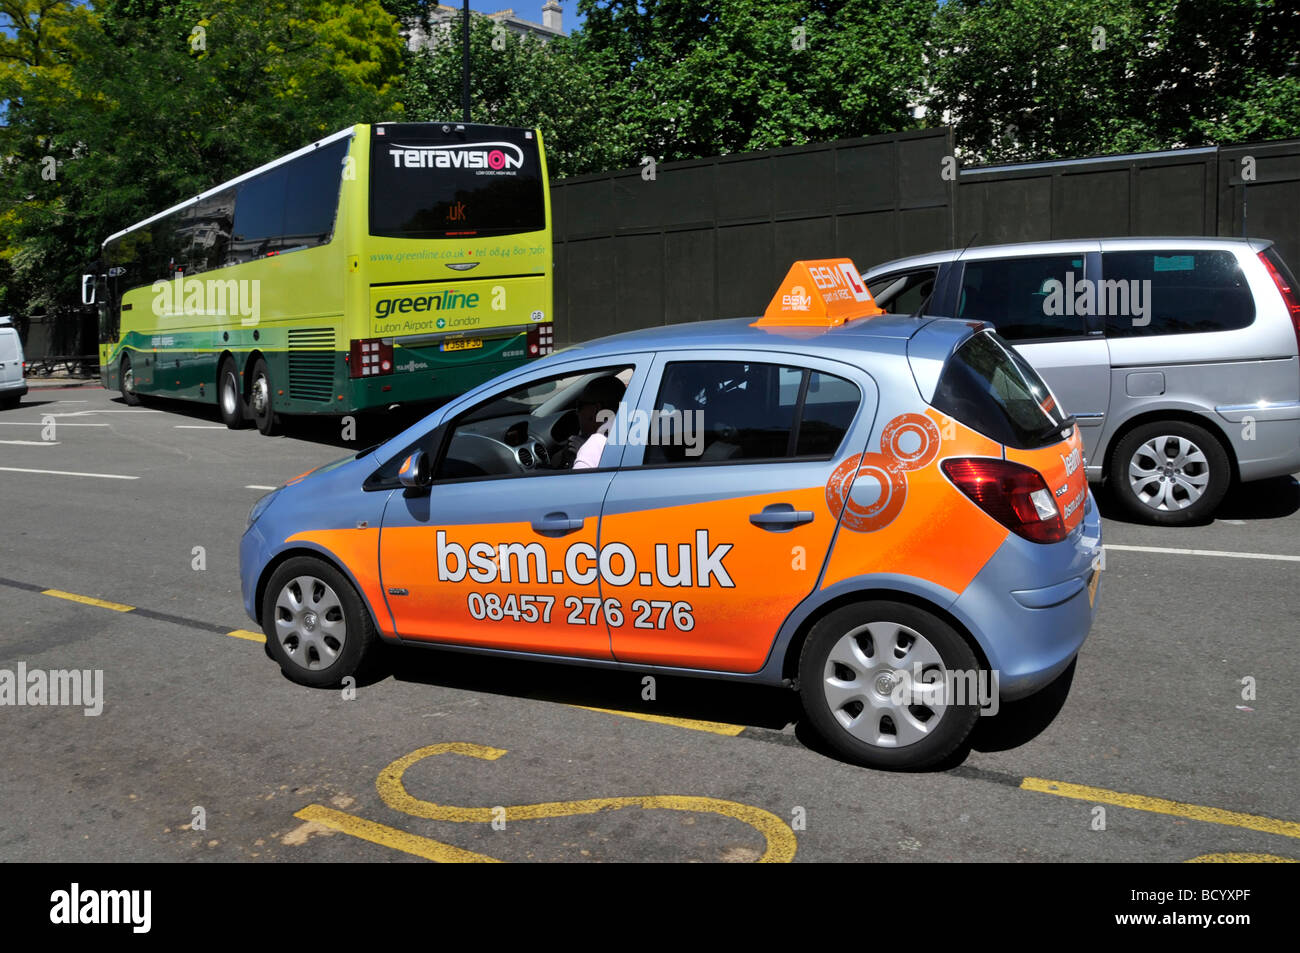 BSM-Website-Adresse auf der Trainingswagen in Park Lane in der Nähe von Marble Arch London während der Lektion oder möglicherweise einen Test angezeigt Stockfoto